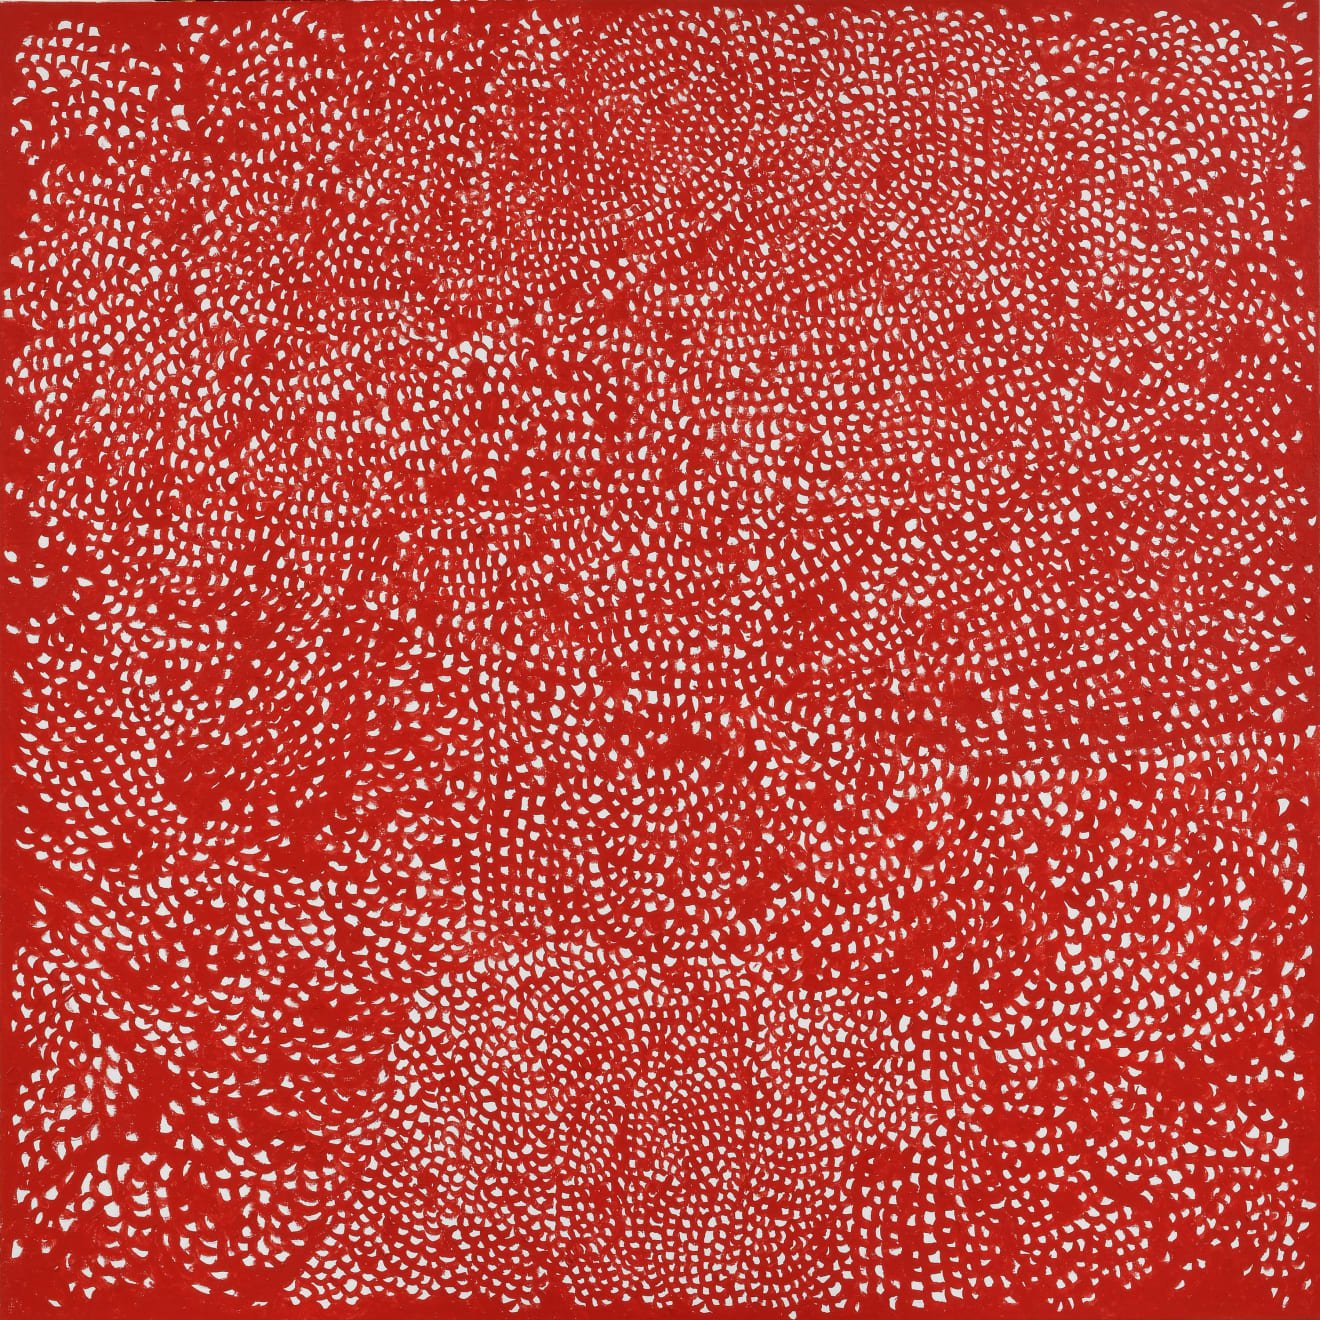 Yayoi Kusama - Of Dots and Patterns